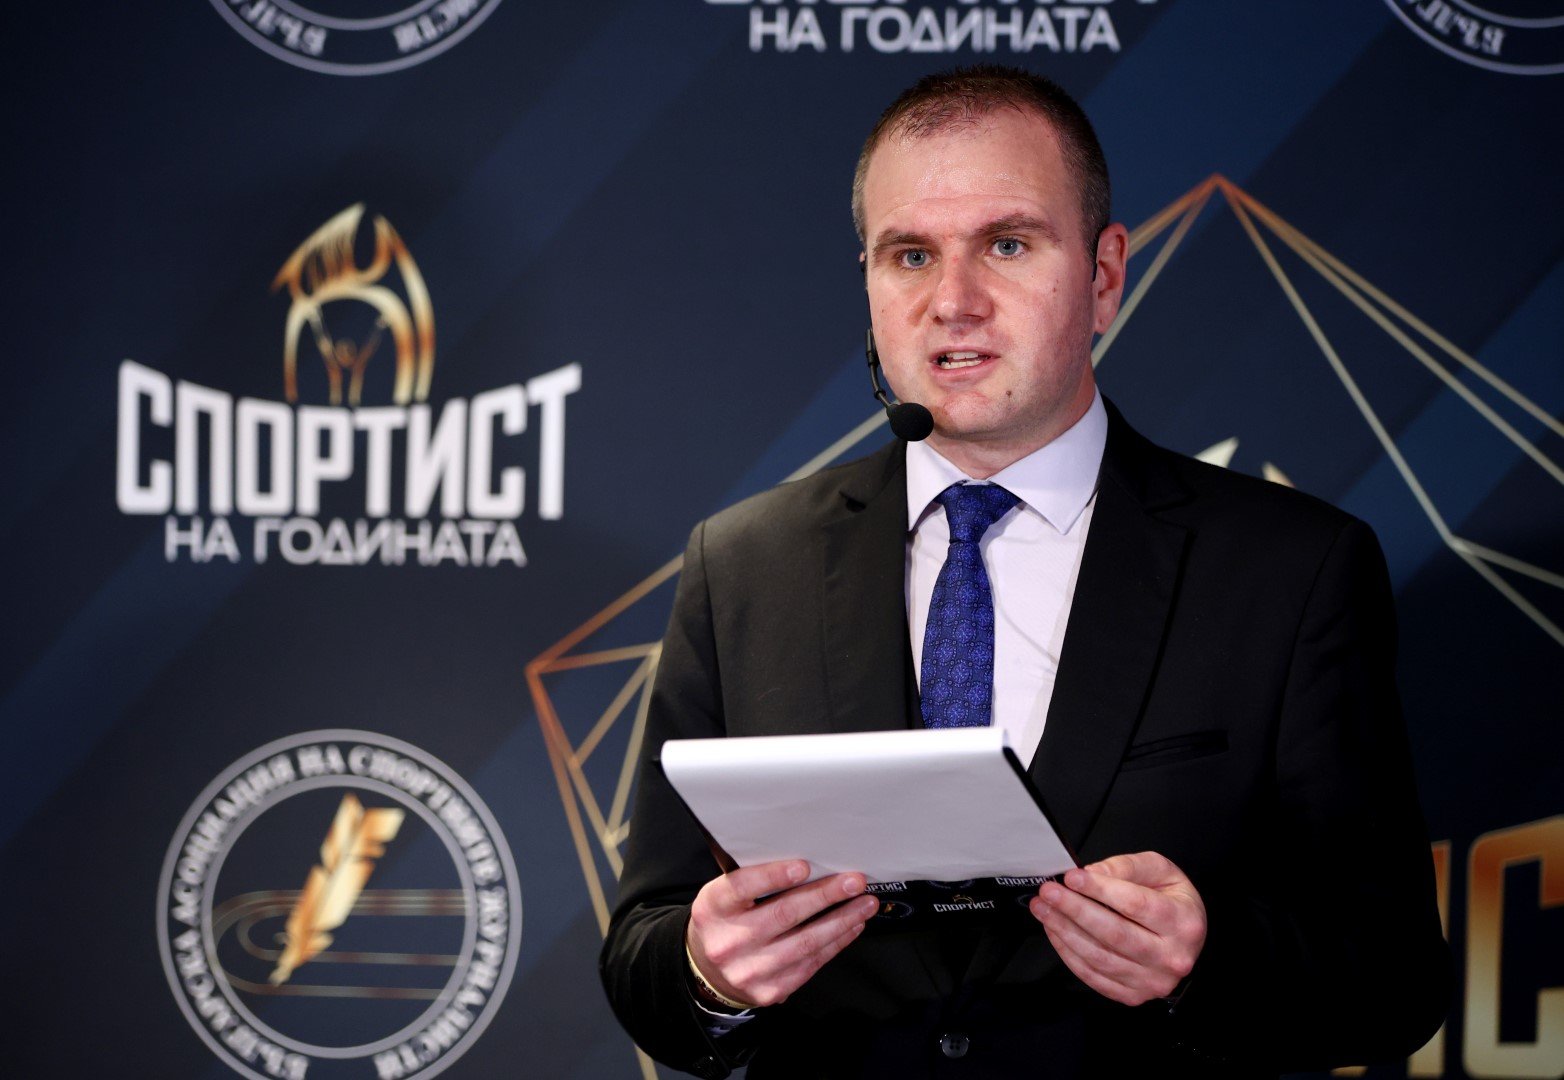 Найден Тодоров, председател на Асоциацията на българските спортни журналисти